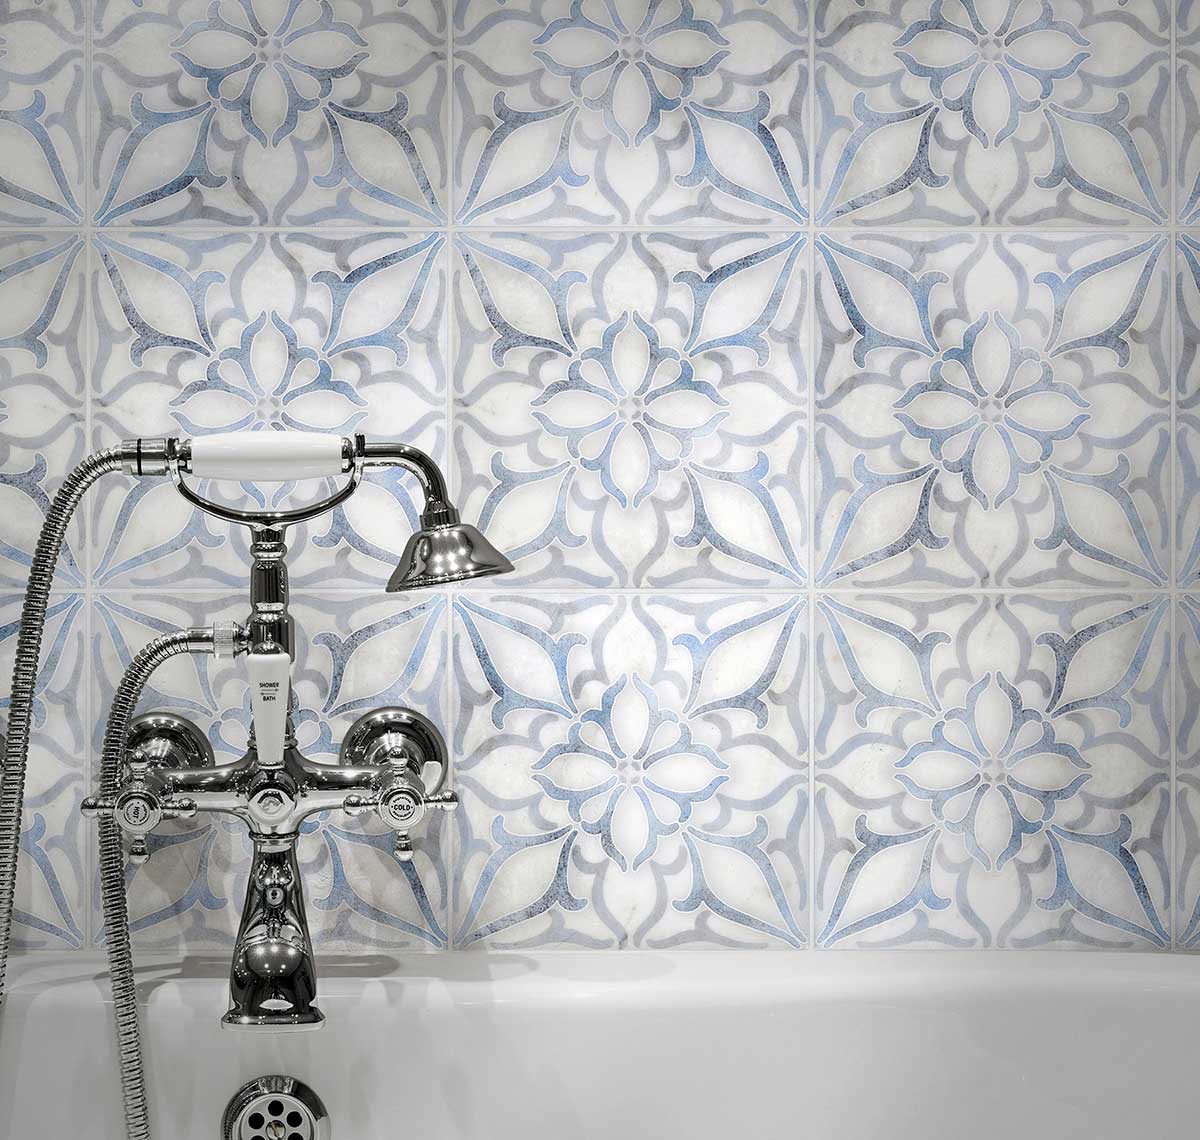 Decorative Tile - Petals Blue AST Bathroom